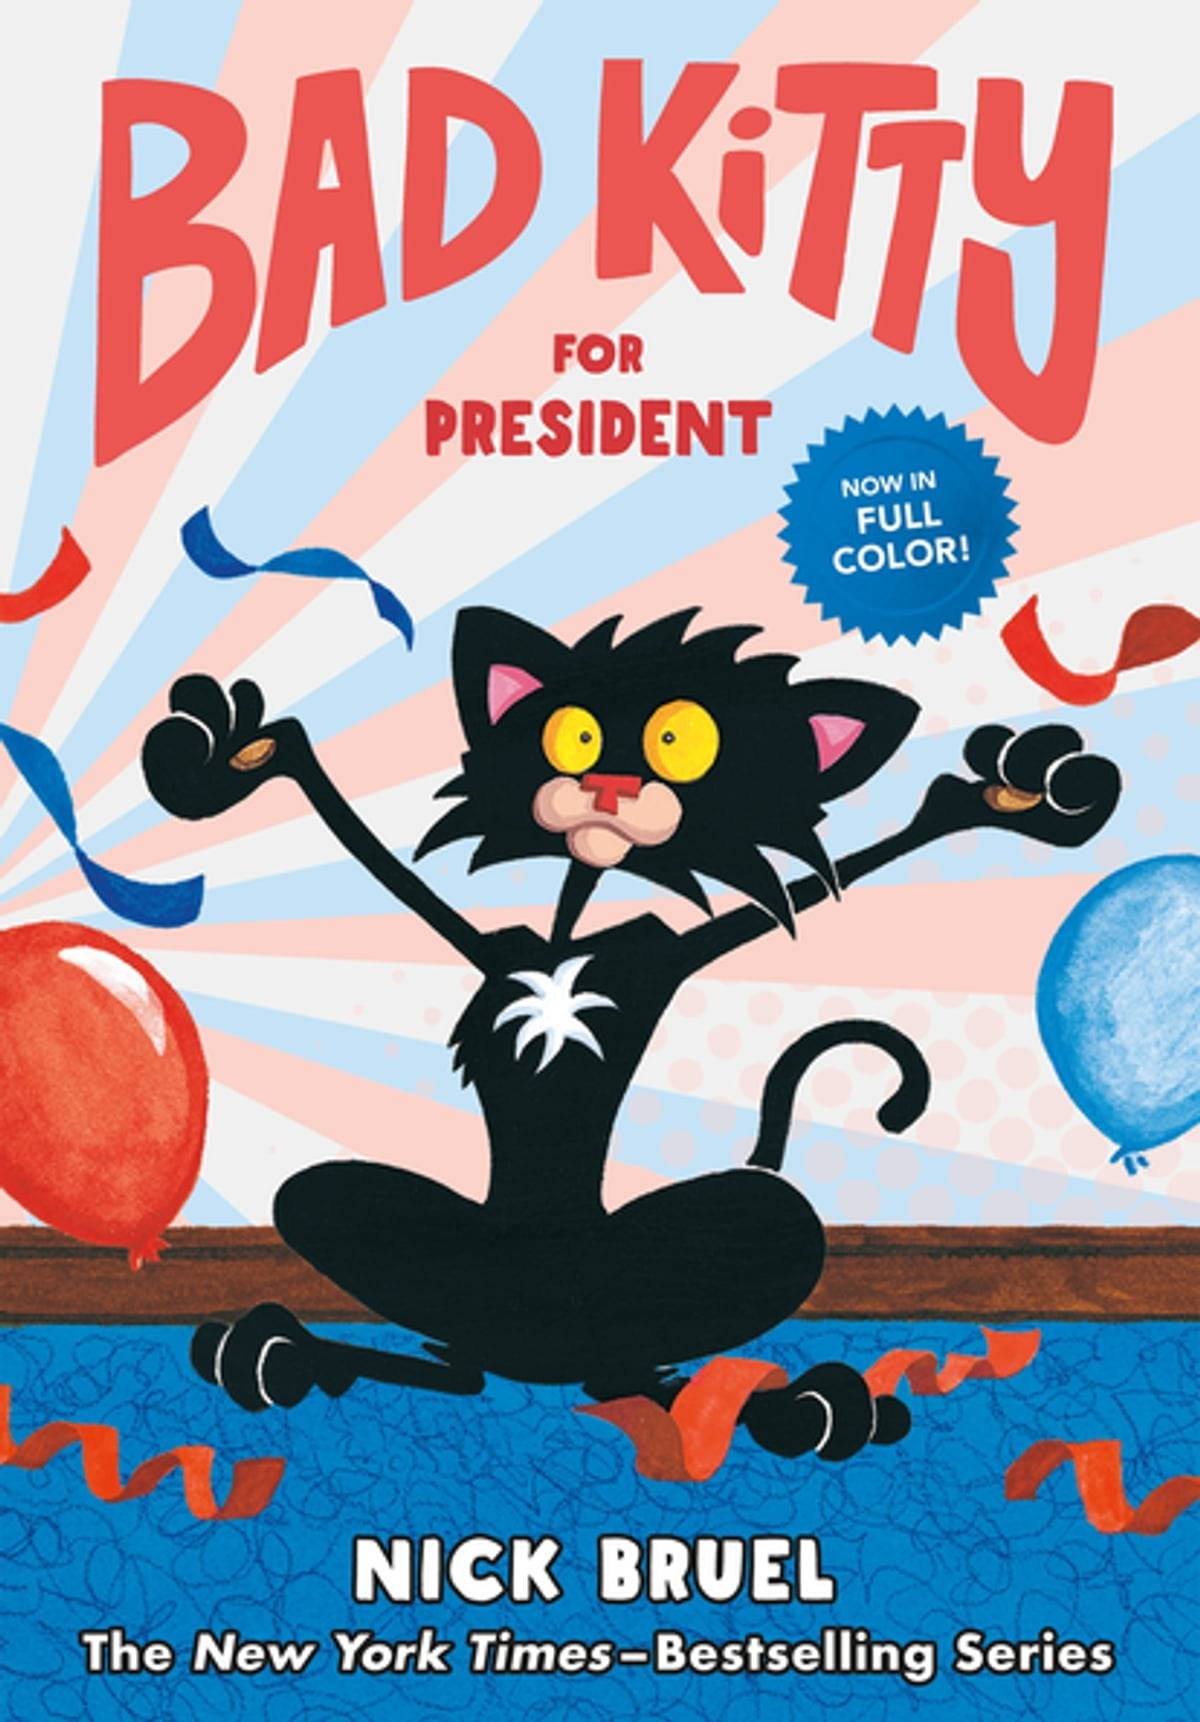 IMG : Bad Kitty for President